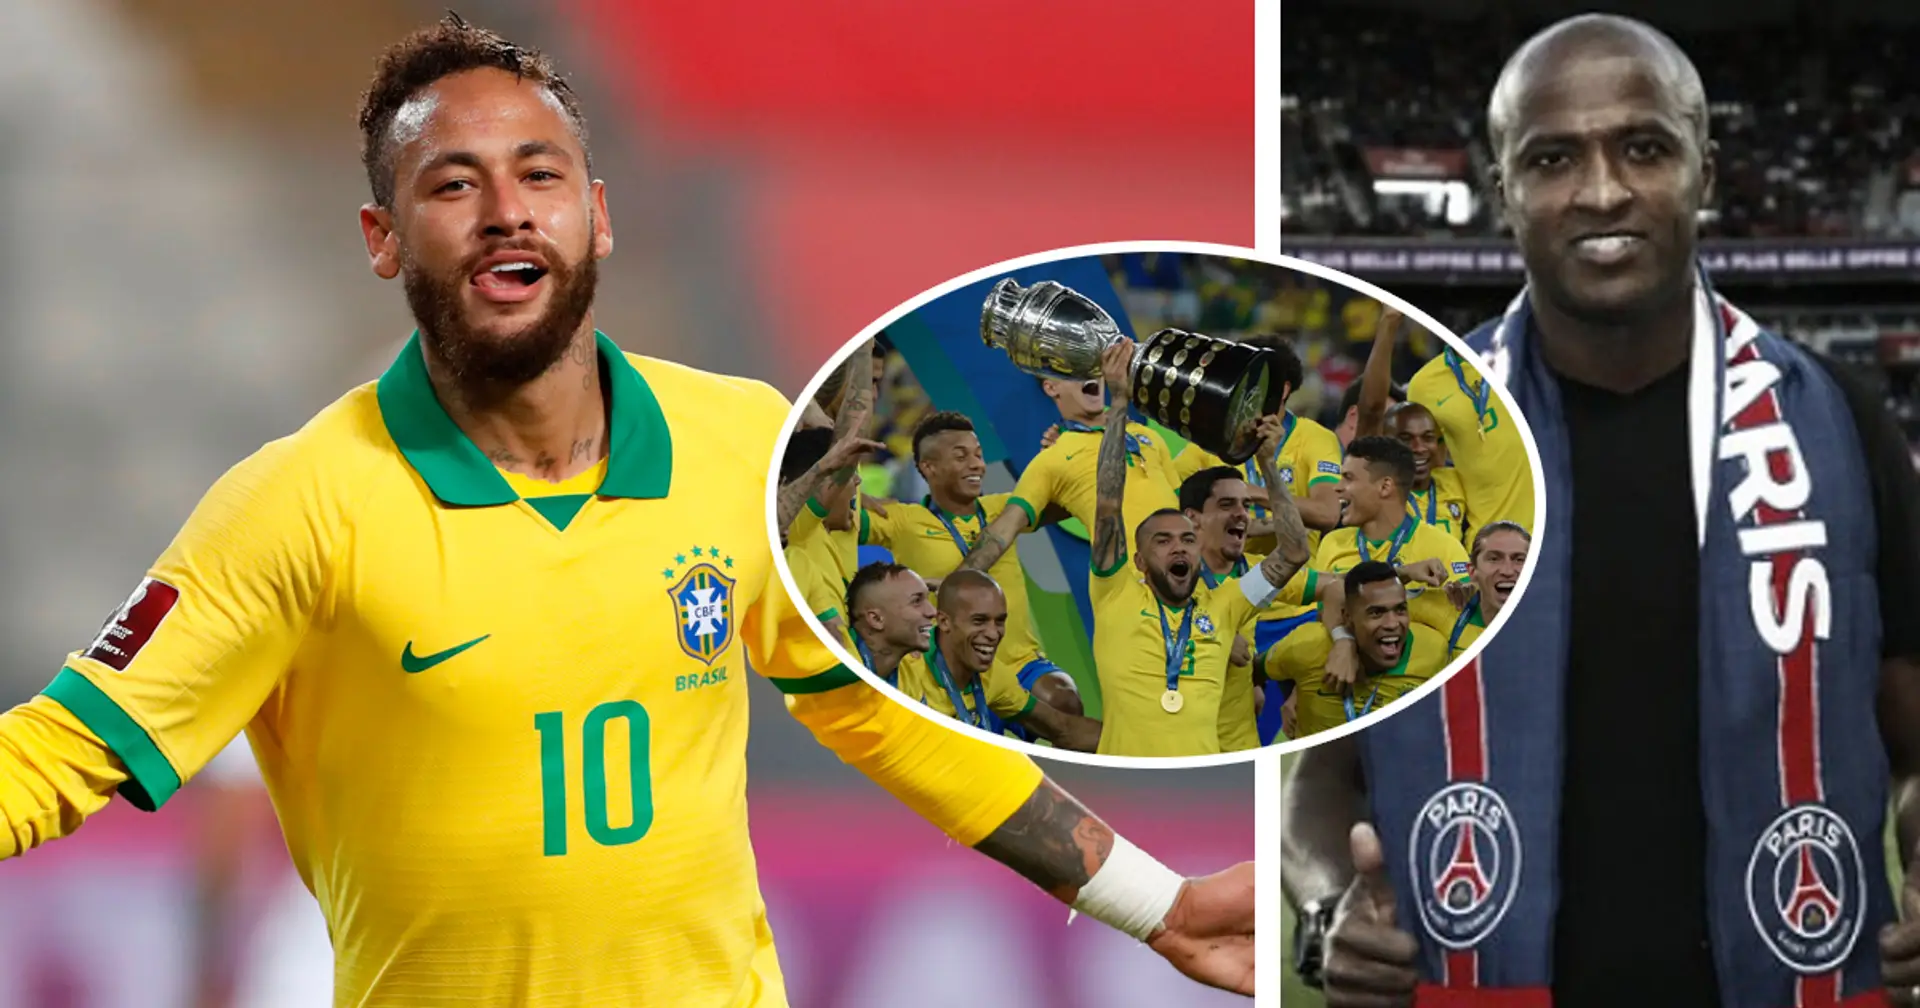 "S’il veut être considéré comme un des meilleurs du monde, il doit gagner la Copa America" : Reinaldo met Neymar au défi